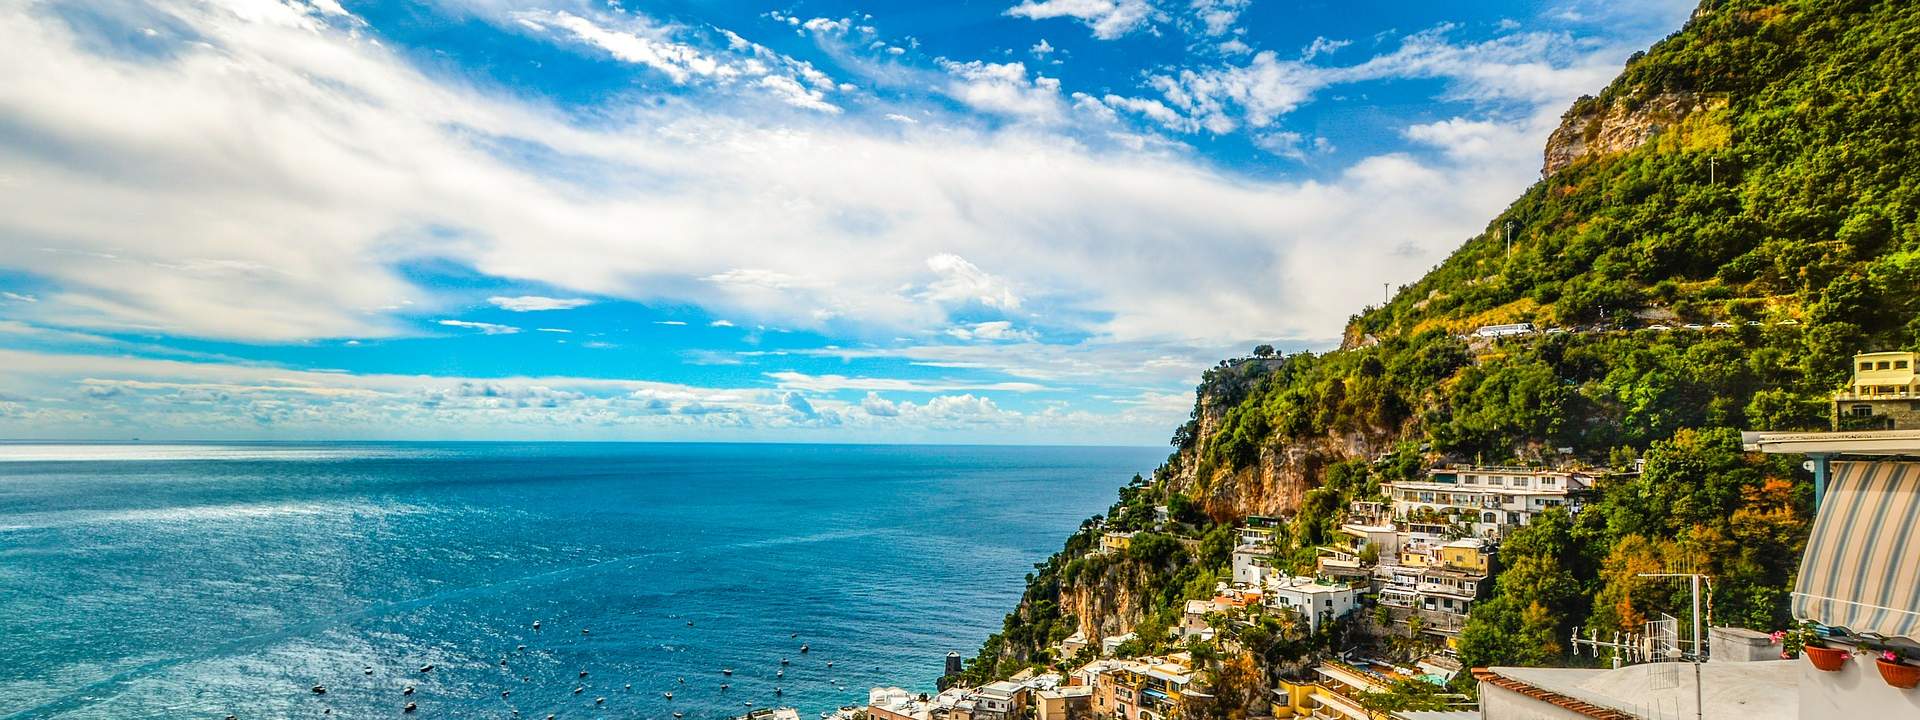 Segeln Sie von Neapel über Capri an der Amalfi-Küste entlang